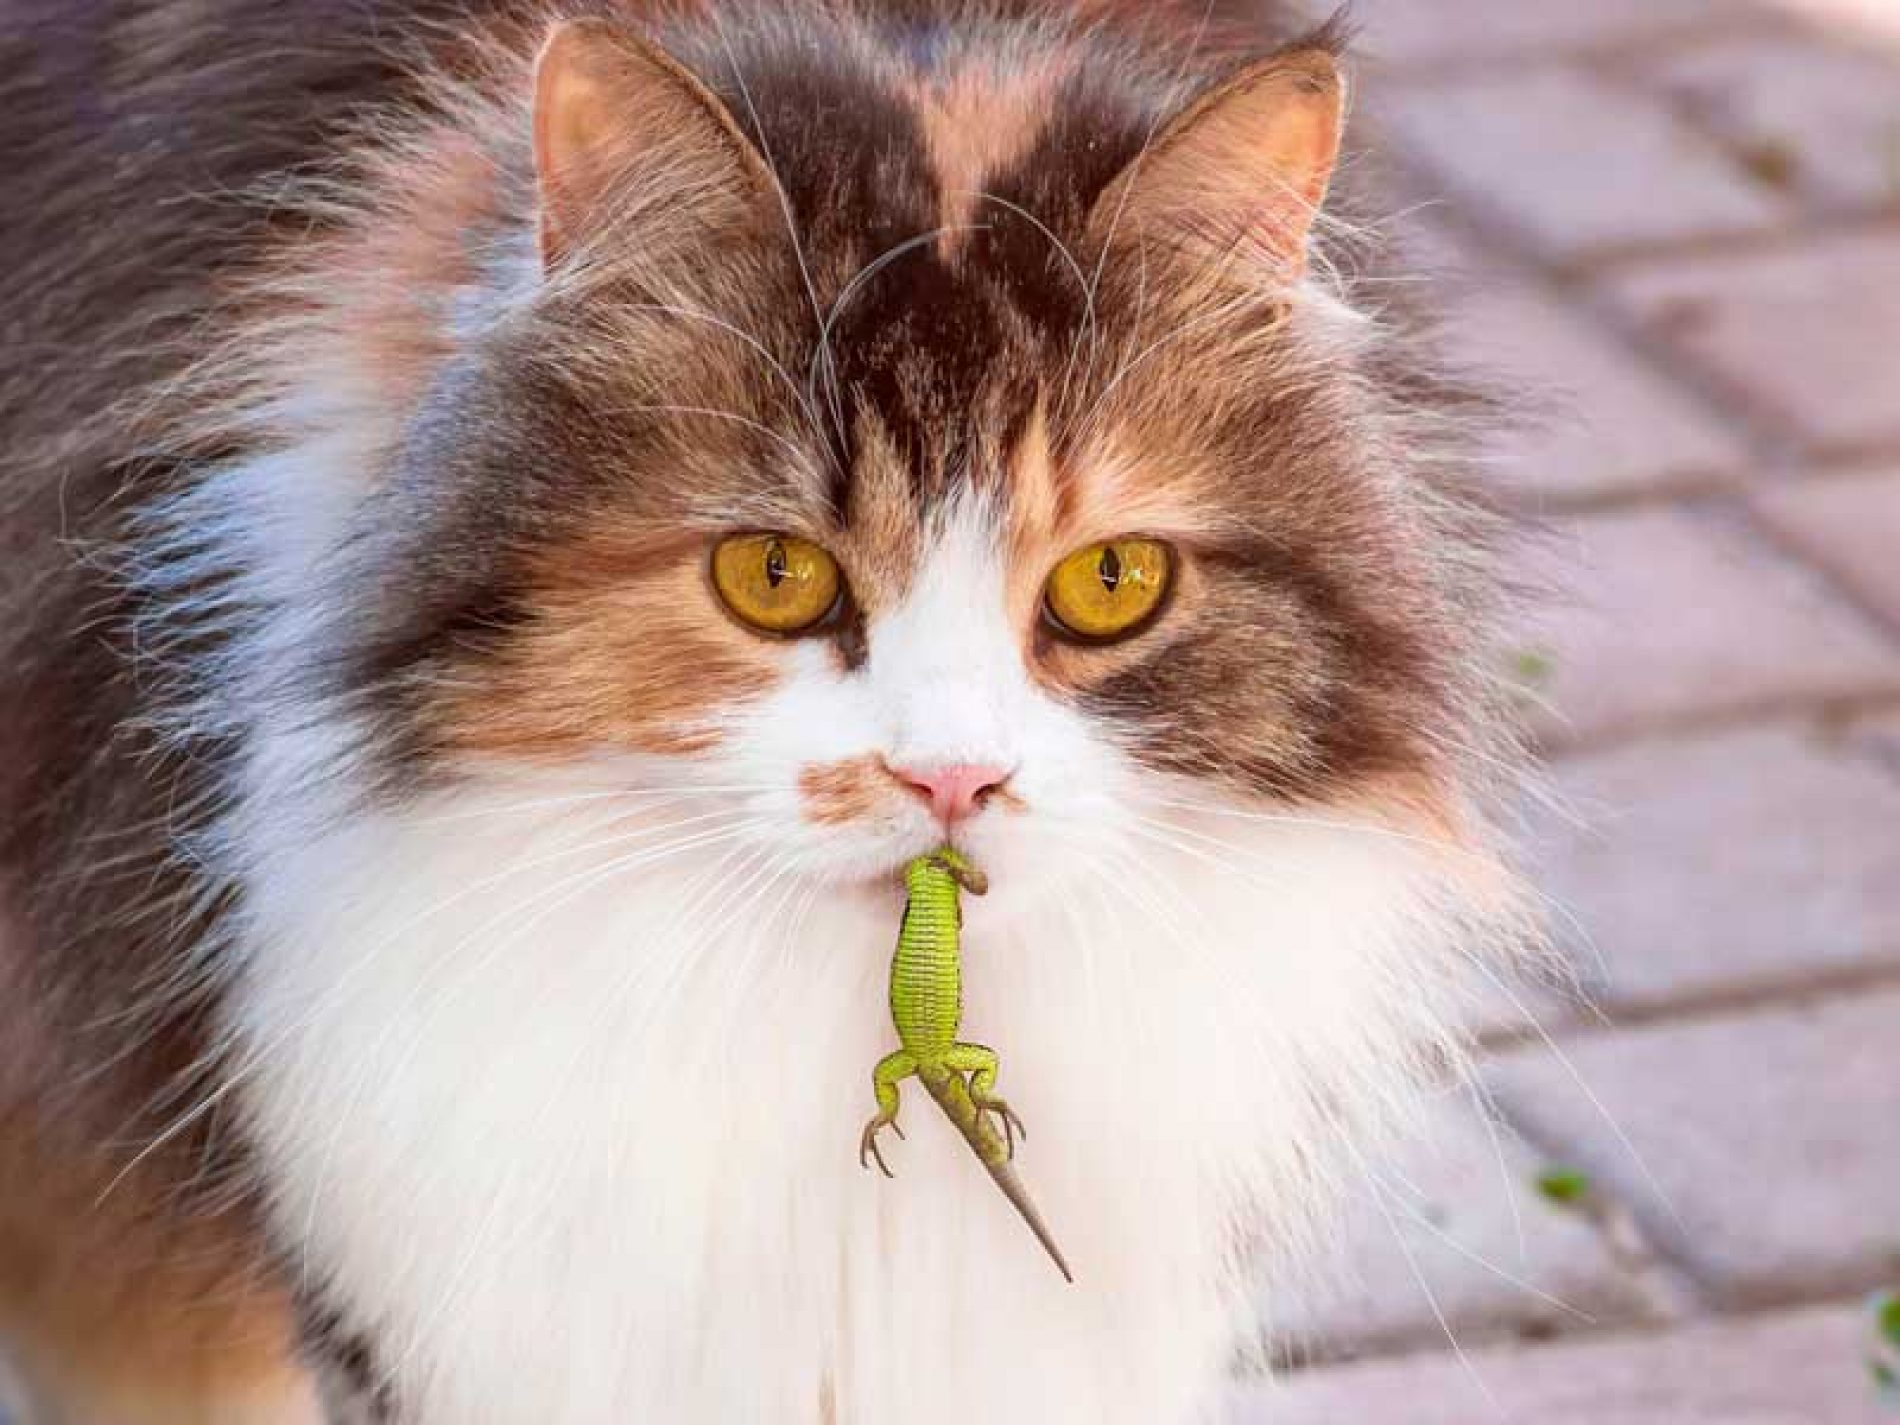 Un biólogo da una drástica solución para los gatos domésticos asilvestrados